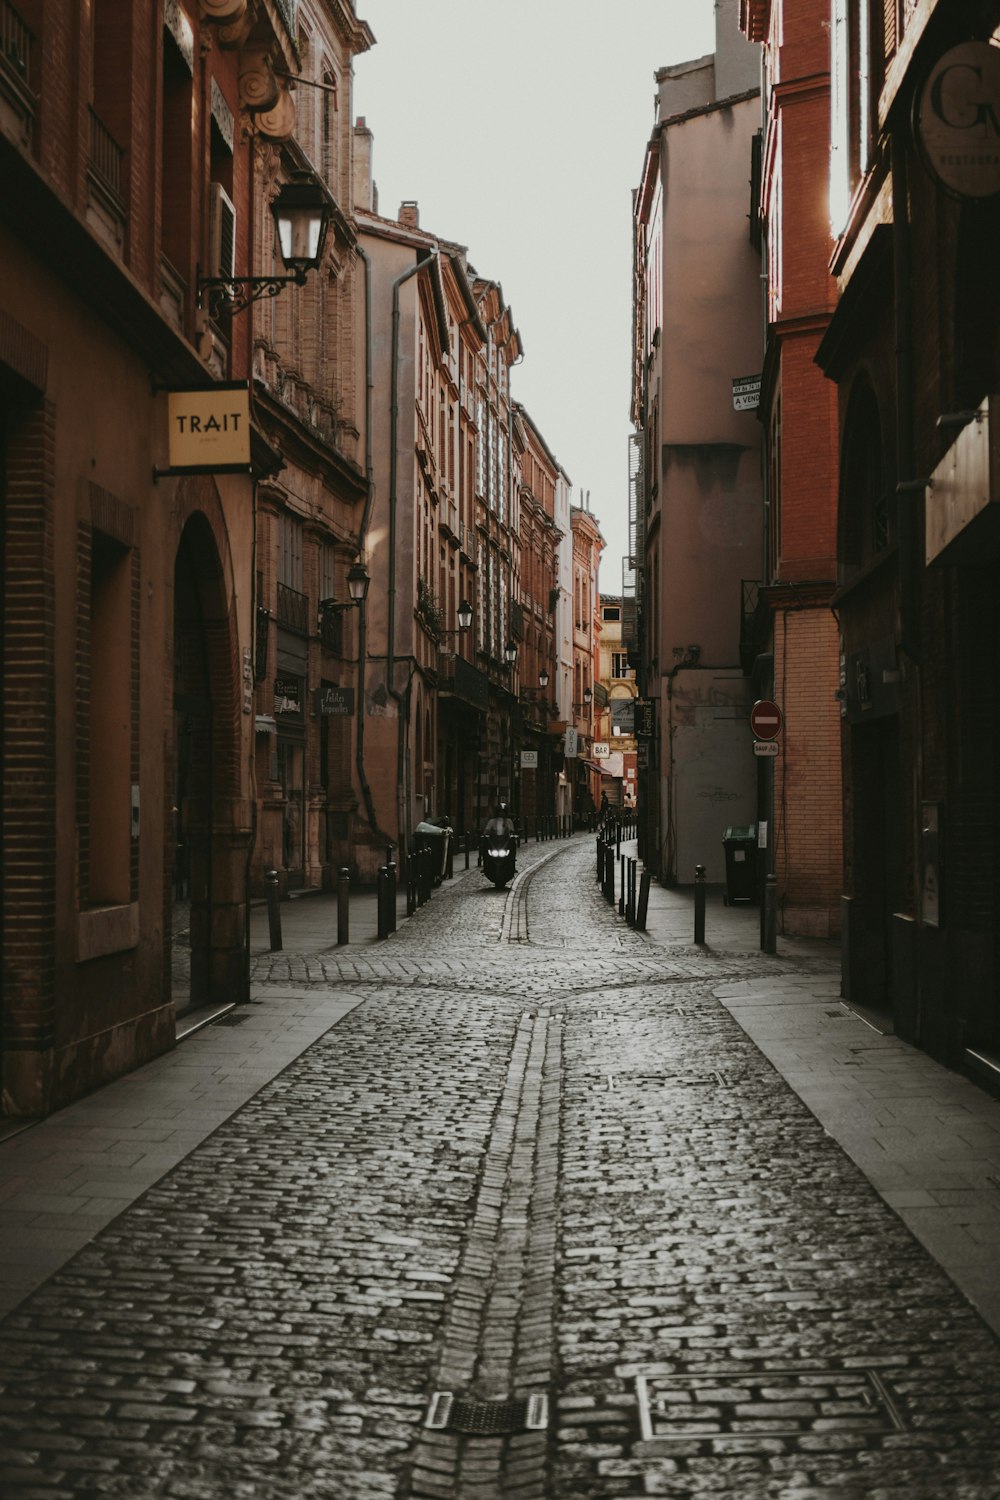 people walking on street between buildings during daytime